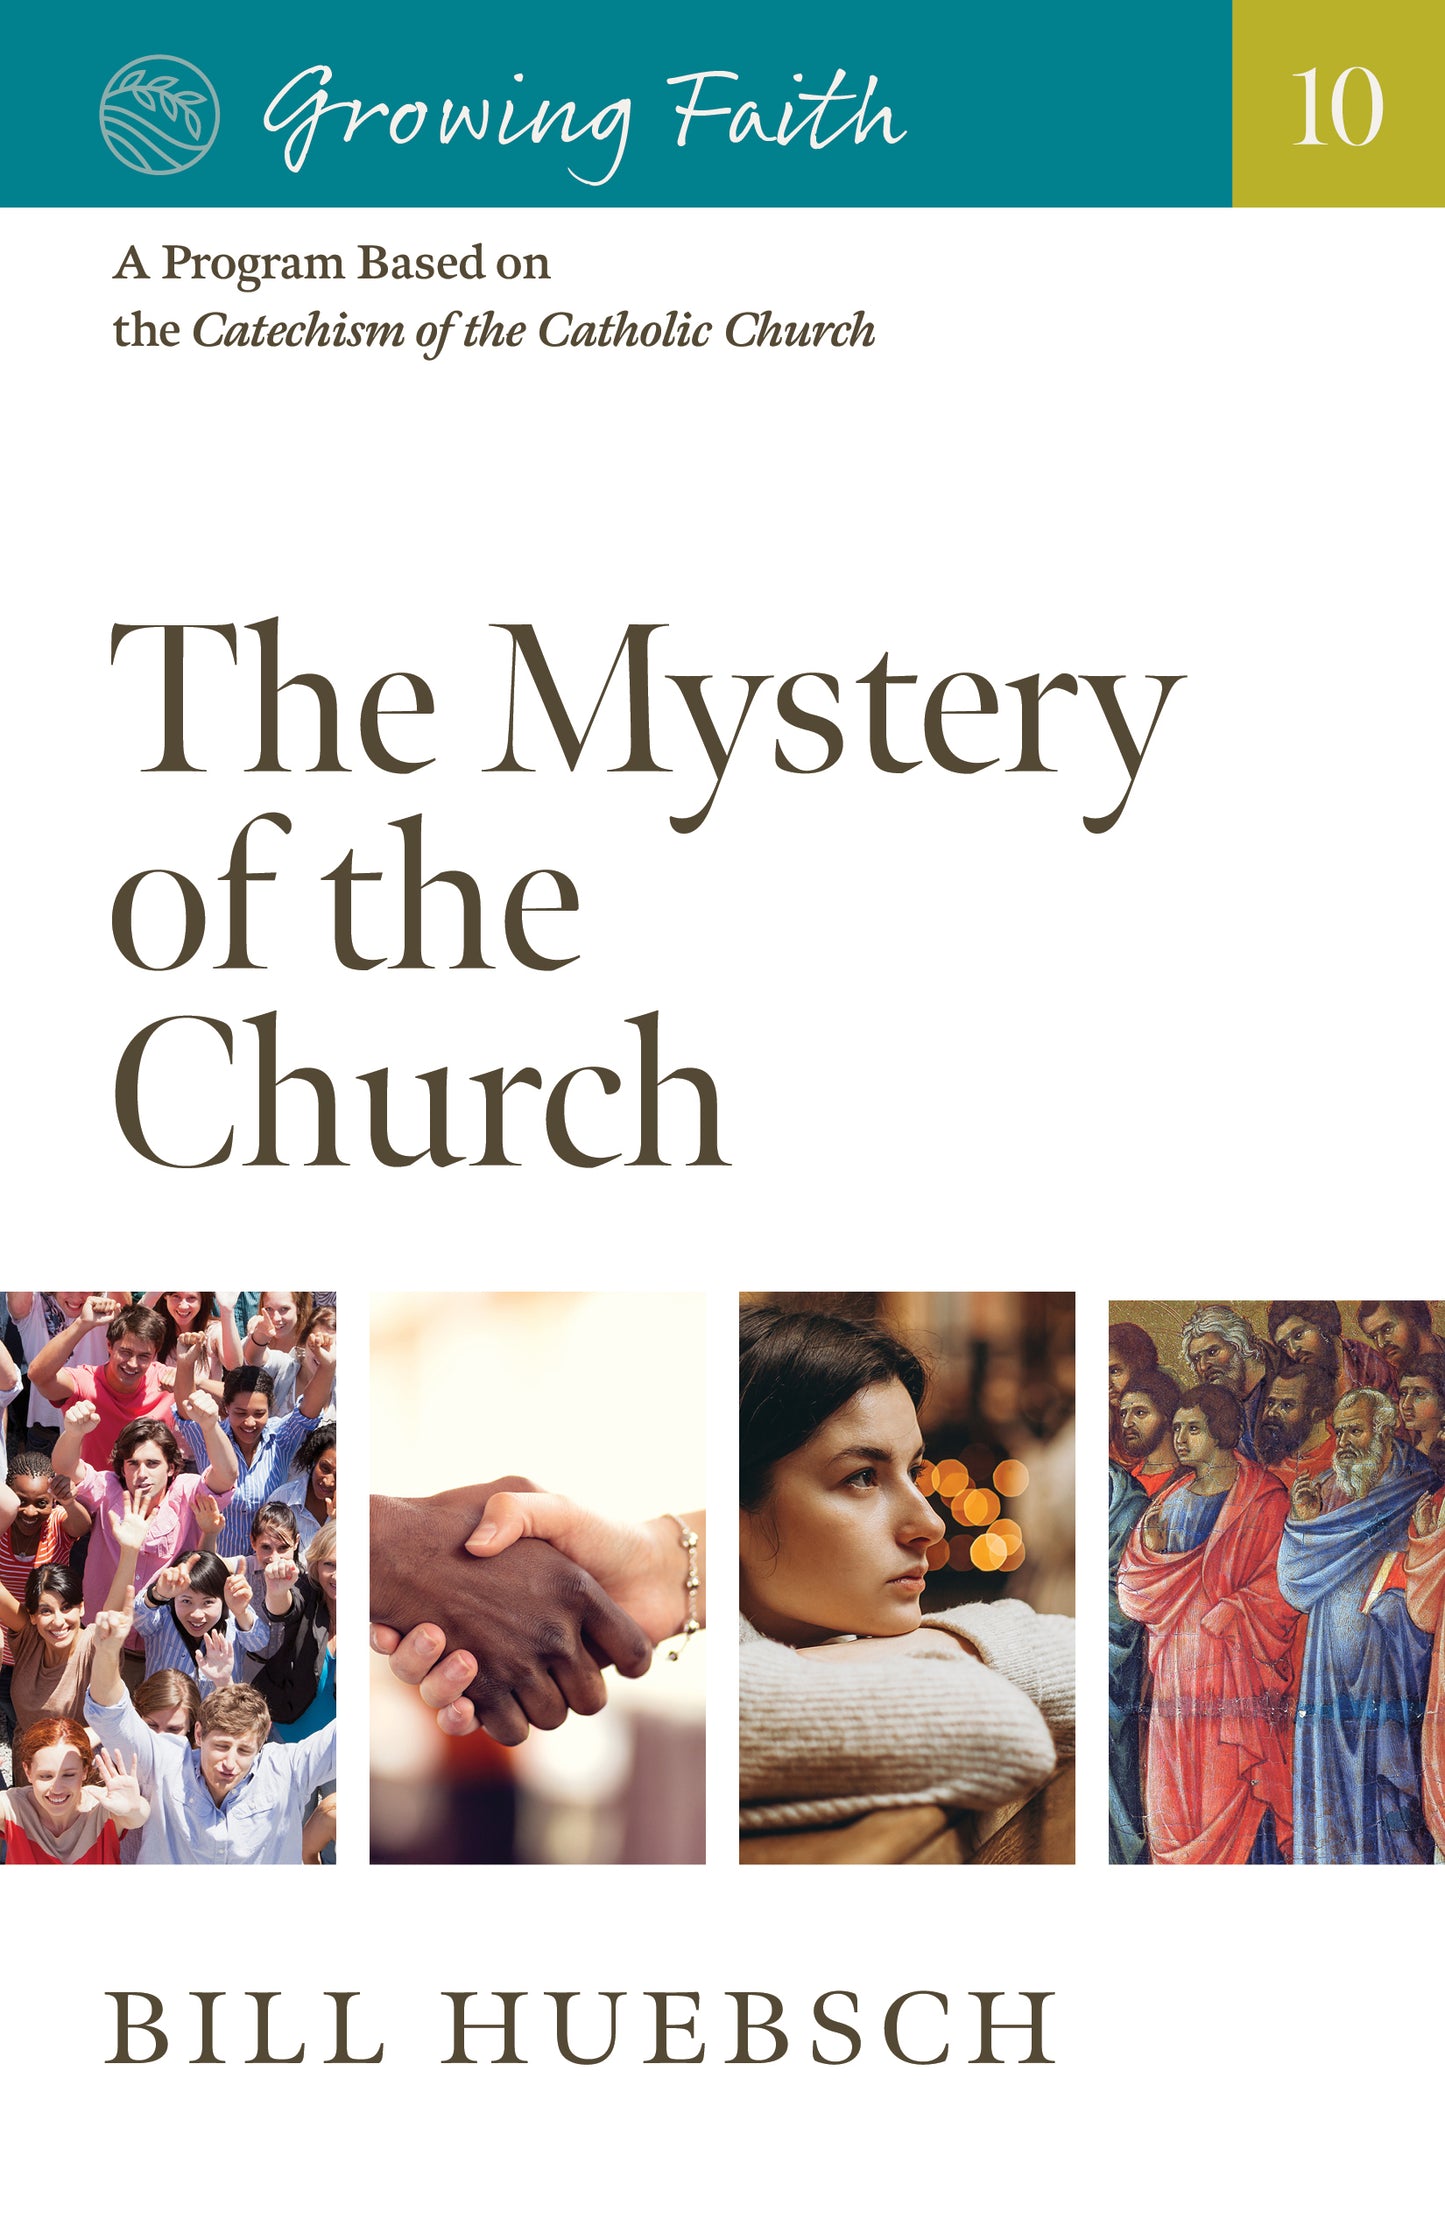 Growing Faith: The Mystery of the Church